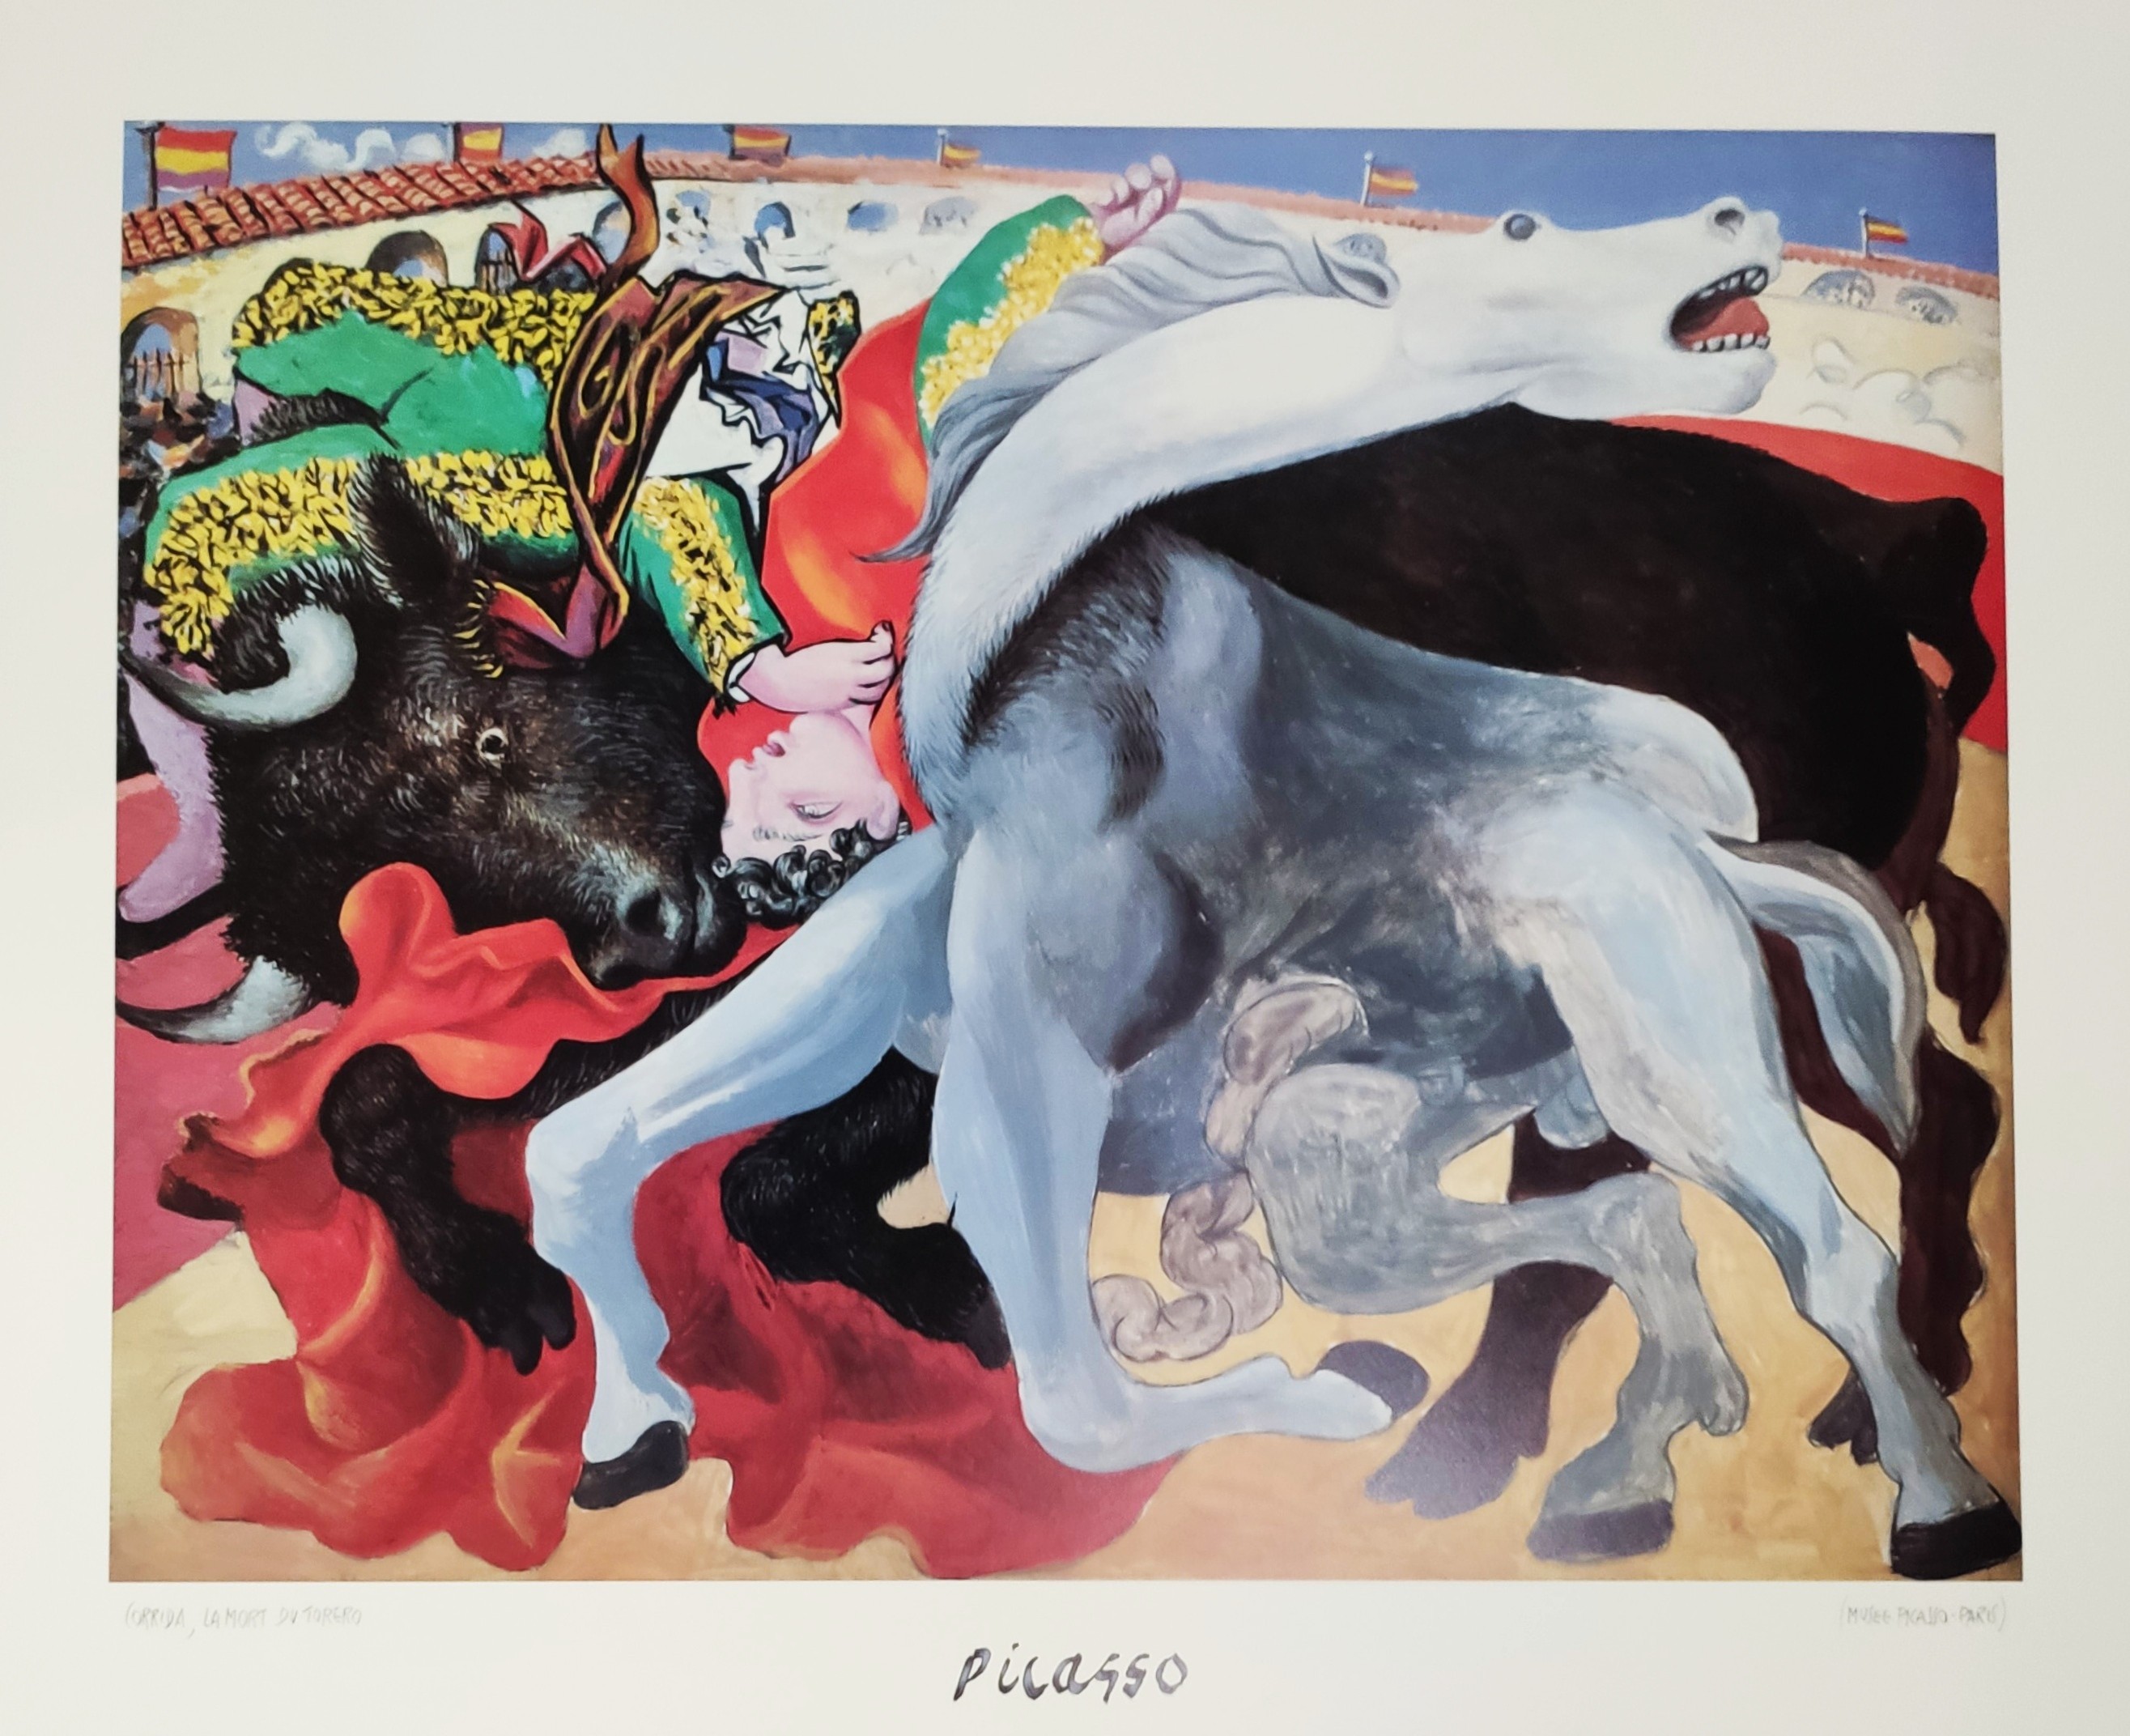 CORRIDA, LA MORT DU TORERO - PICASSO Pablo (d'aprés) (1881 - 1973) - Print